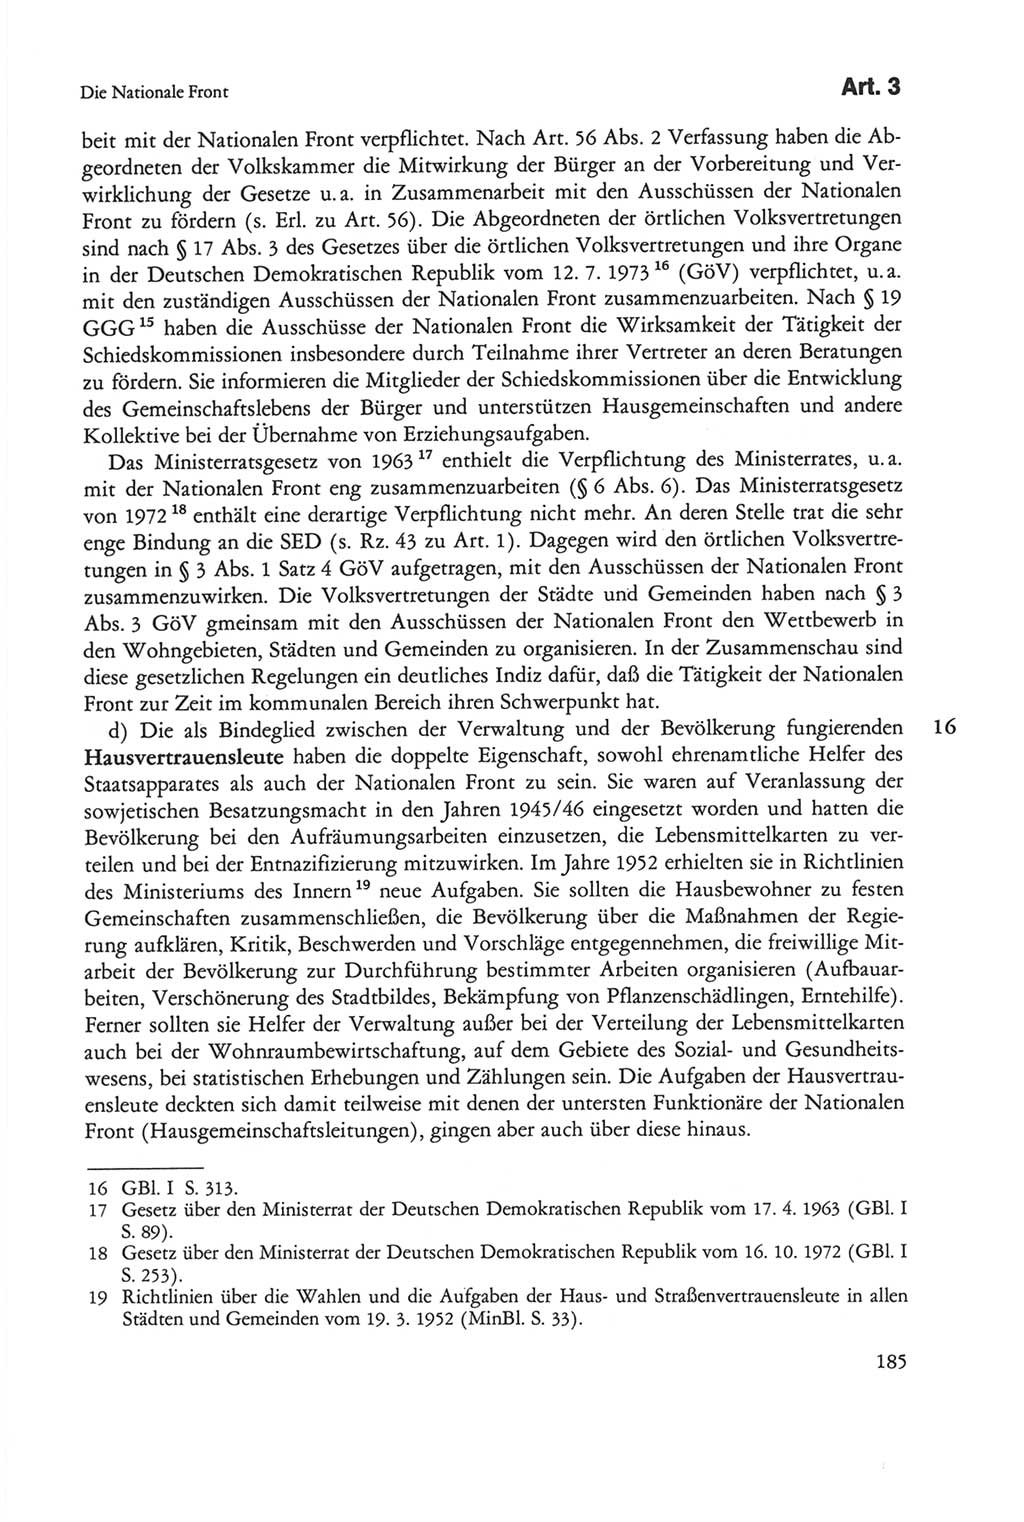 Die sozialistische Verfassung der Deutschen Demokratischen Republik (DDR), Kommentar 1982, Seite 185 (Soz. Verf. DDR Komm. 1982, S. 185)